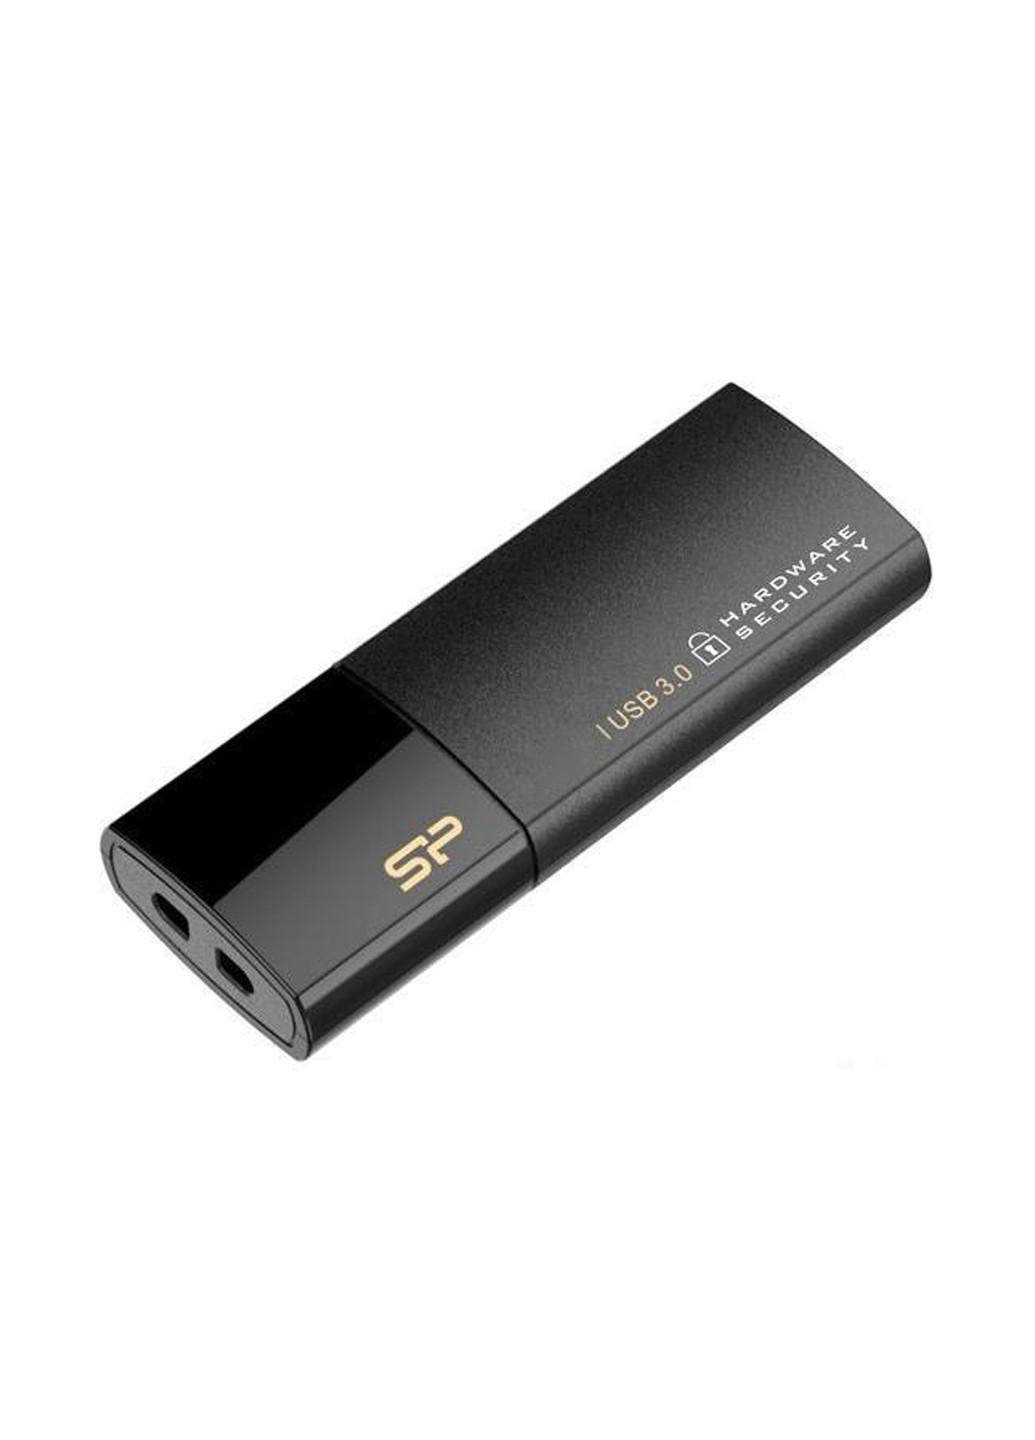 Флеш память USB 16GB Secure G50 USB 3.0 (SP016GBUF3G50V1K) Silicon Power флеш память usb silicon power 16gb secure g50 usb 3.0 (sp016gbuf3g50v1k) (136742734)